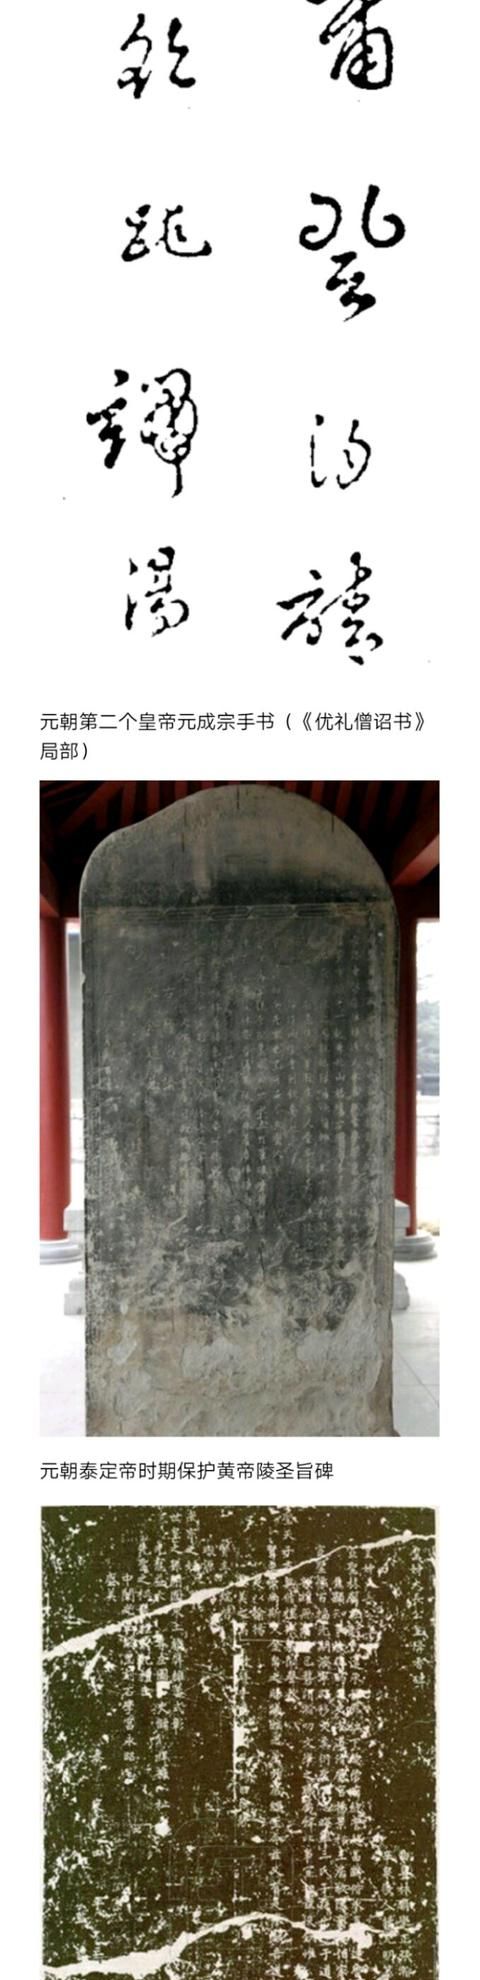 如果国内没有蒙古族,元朝算是中国历史吗图3